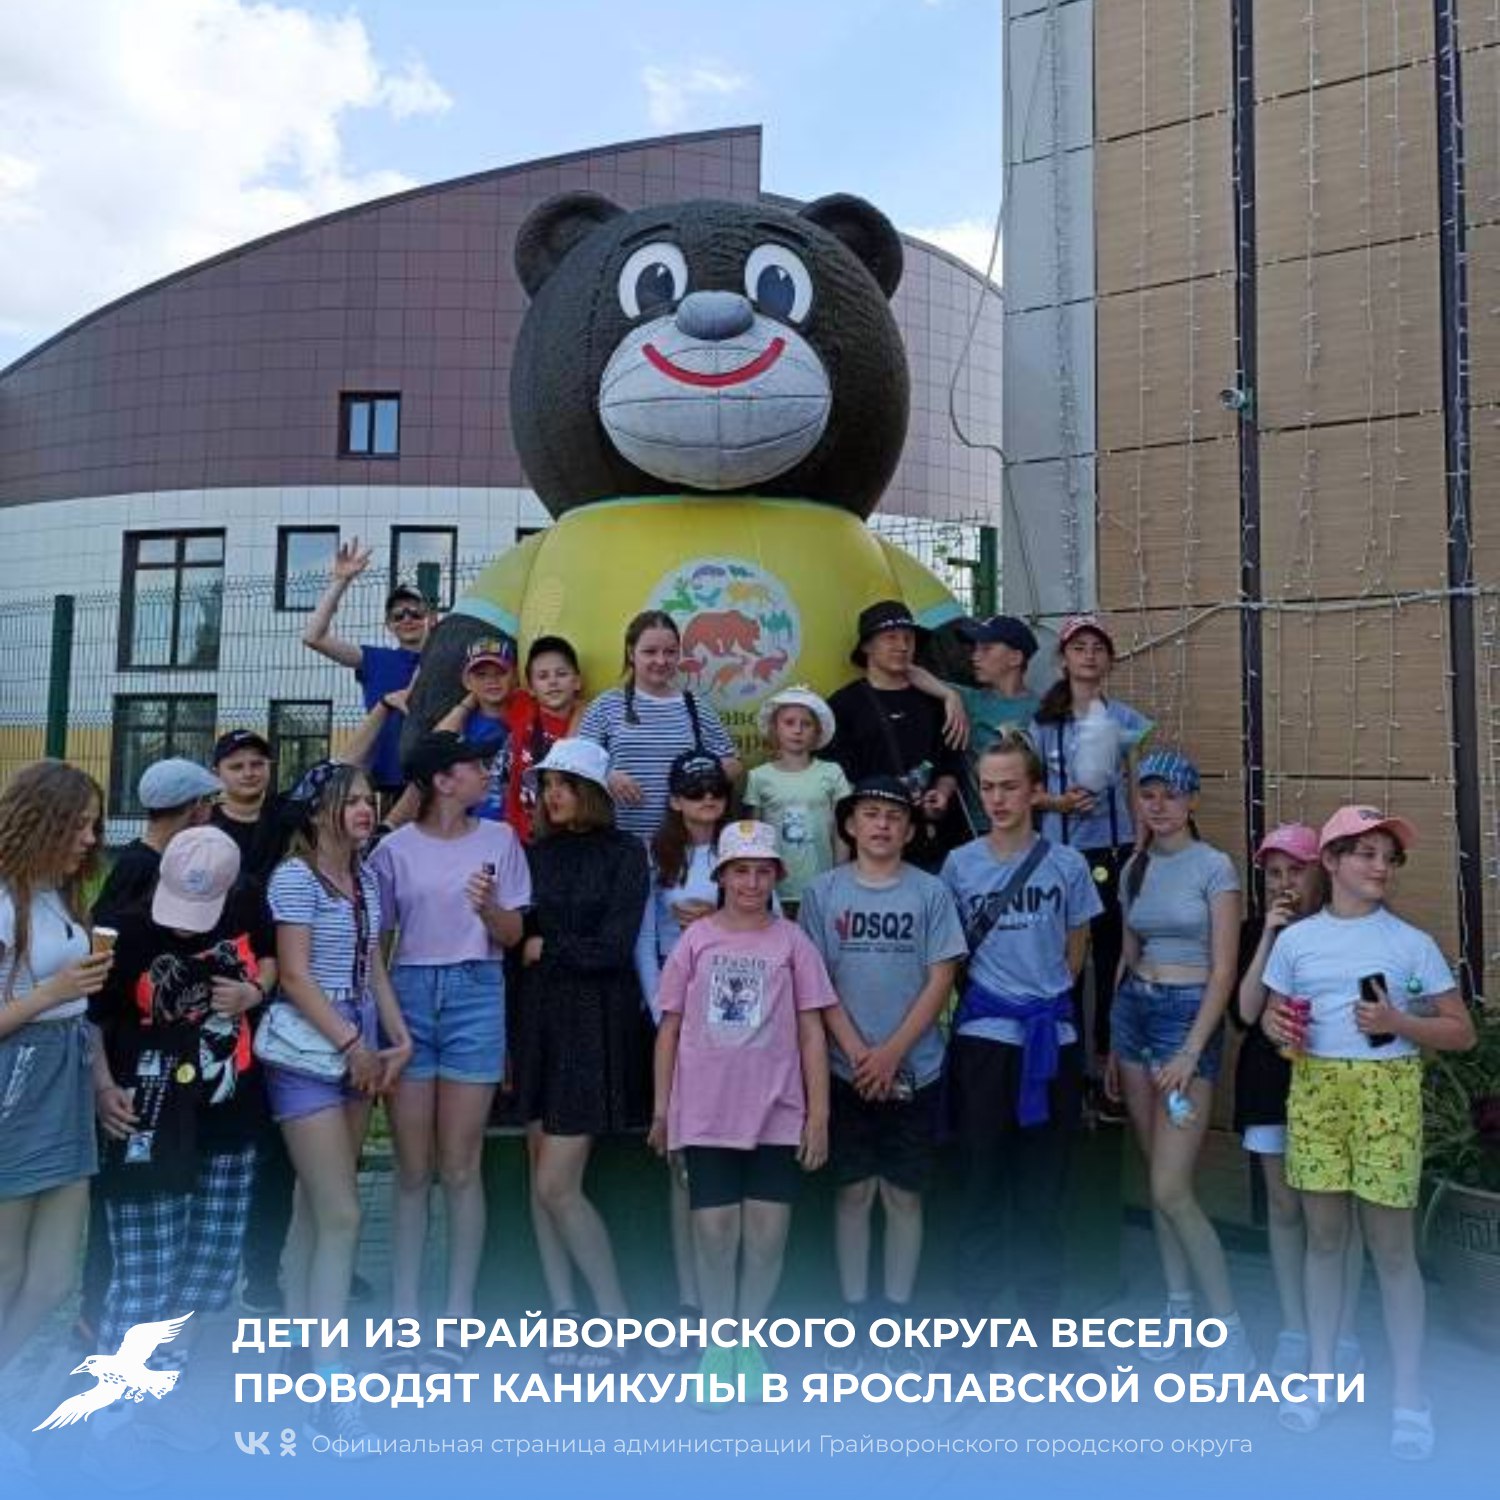 Дети из Грайворонского округа весело проводят каникулы в Ярославской области.